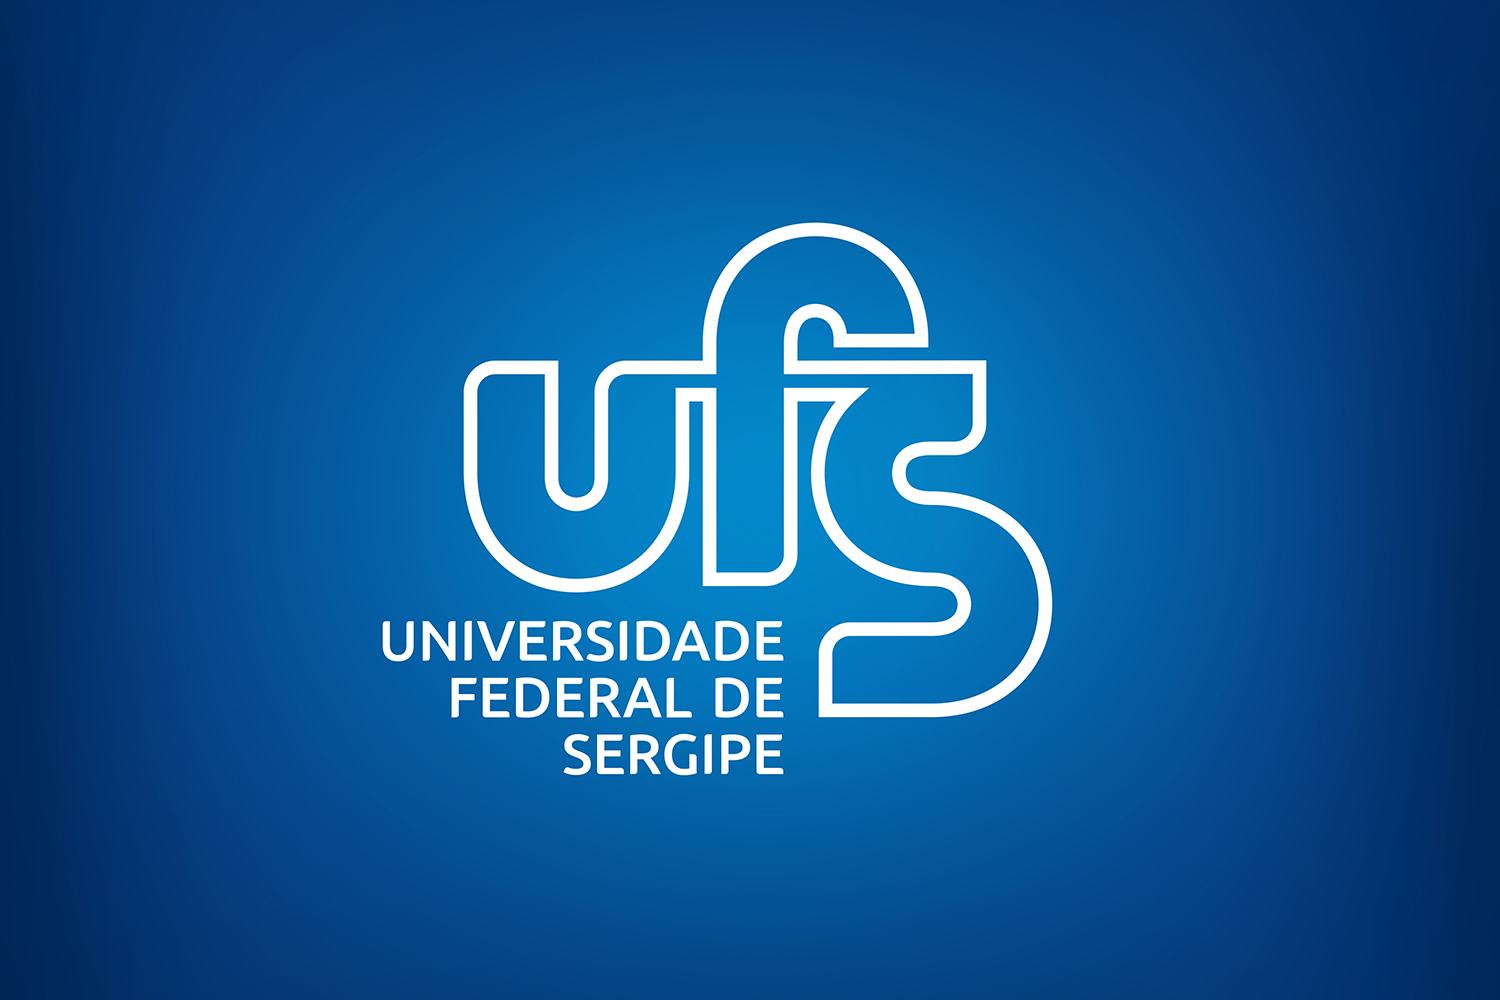 Logotipo se soma ao brasão redesenhado para compôr identidade visual da instituição